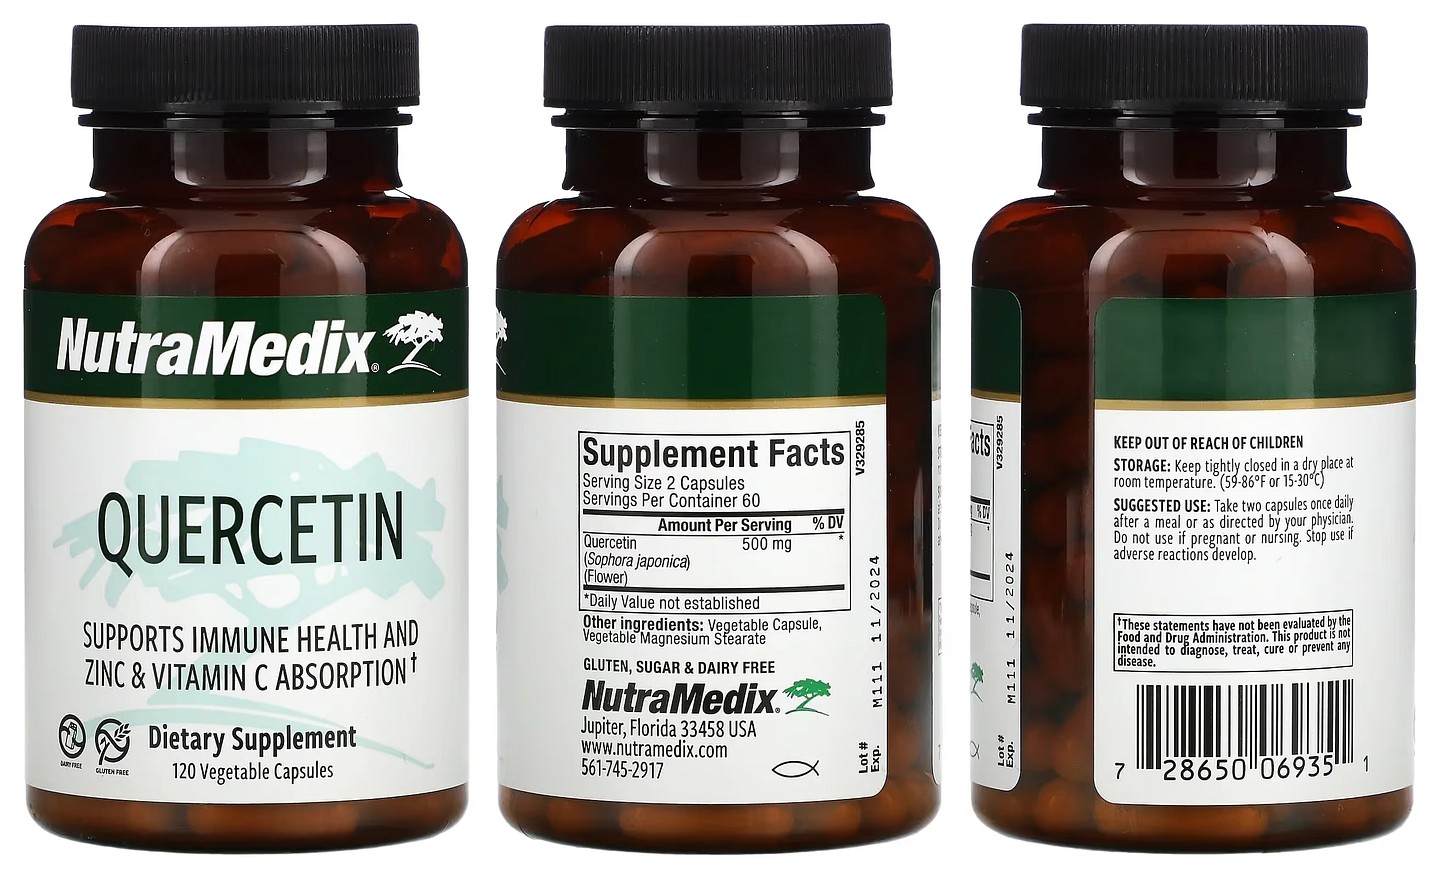 NutraMedix, Quercetin packaging